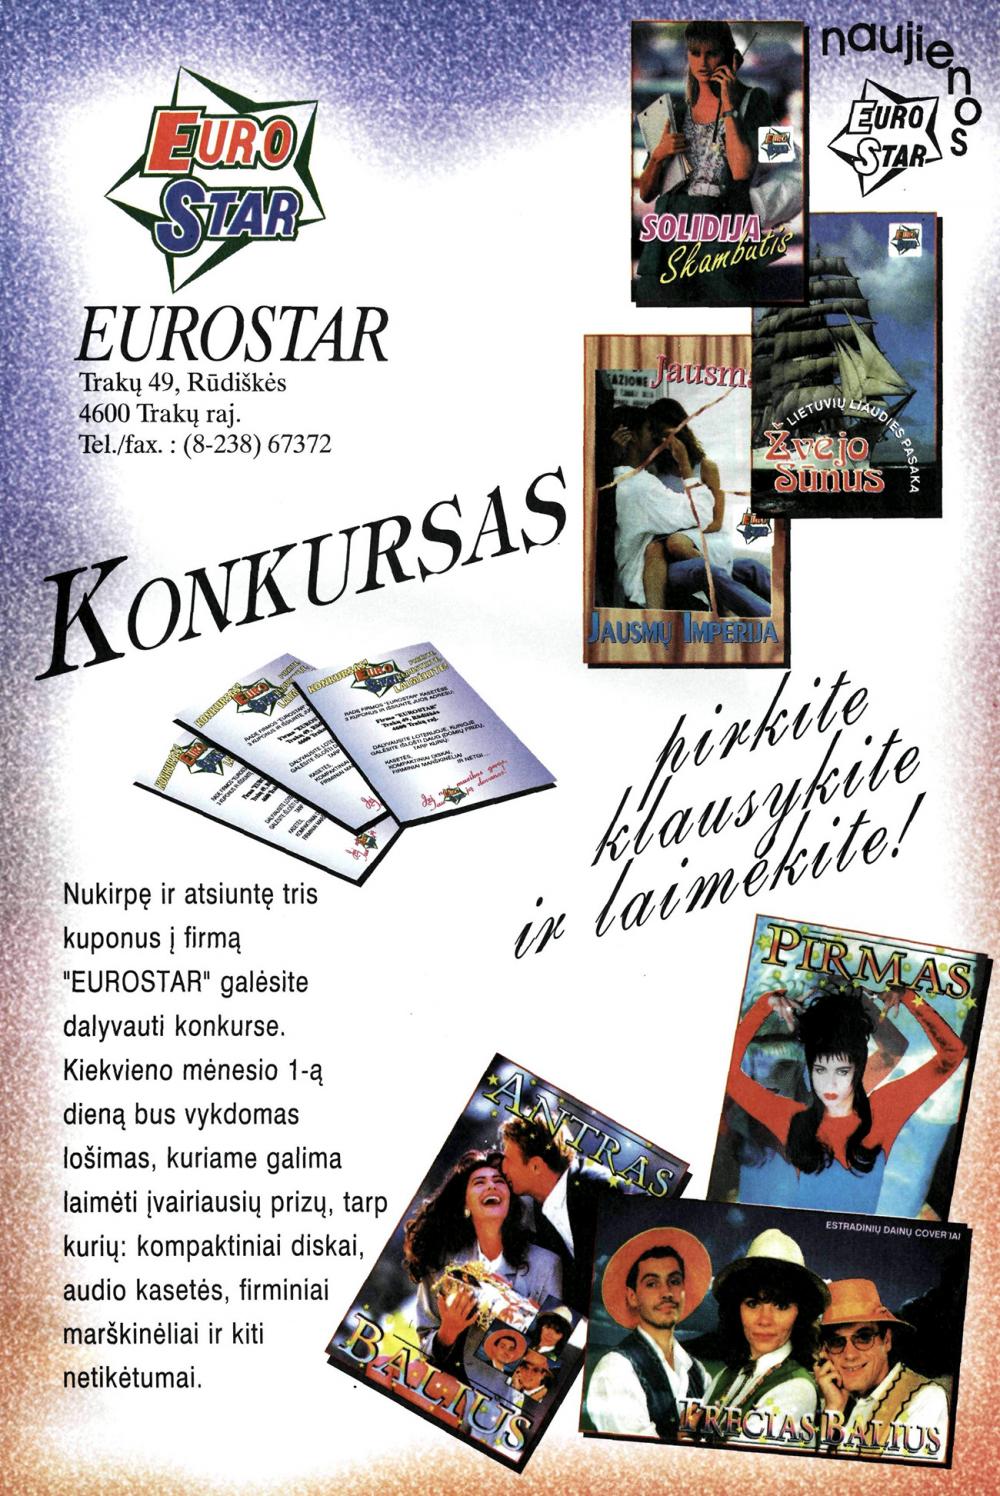 EuroStar konkursas - pirkite, klausykite ir laimėkite!